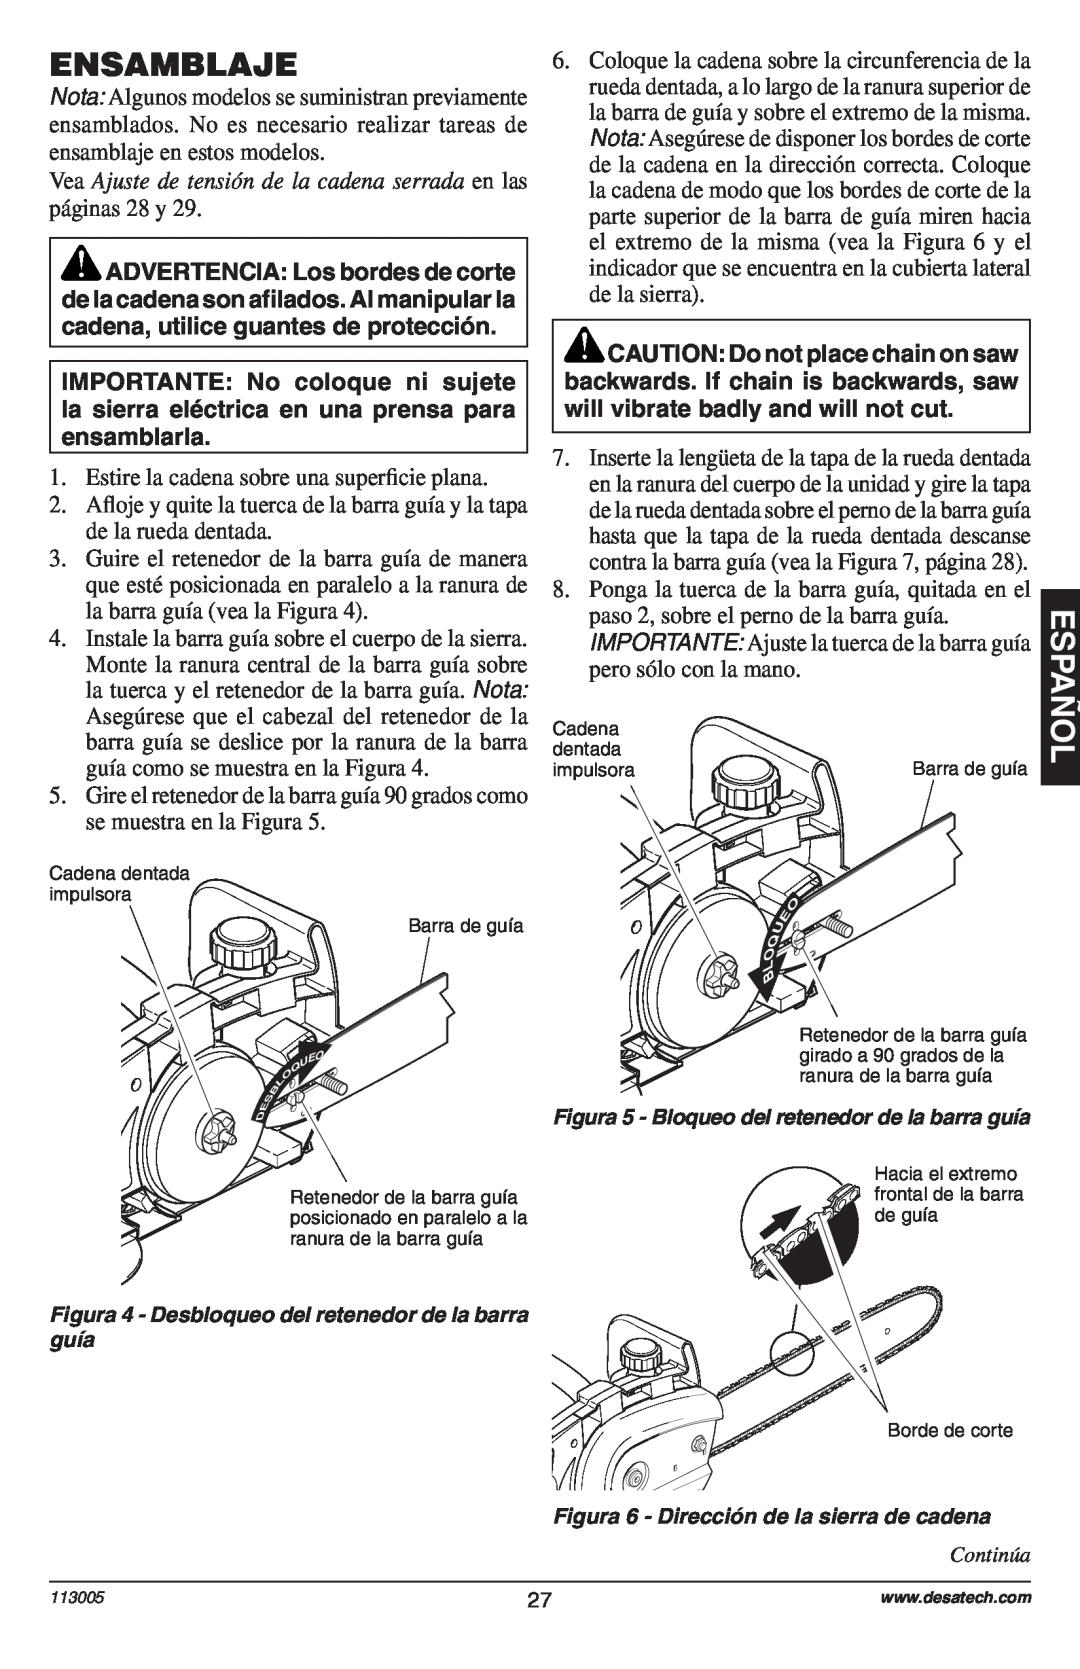 Remington Power Tools Electric Chain Saw Ensamblaje, Vea Ajuste de tensión de la cadena serrada en las páginas 28 y 